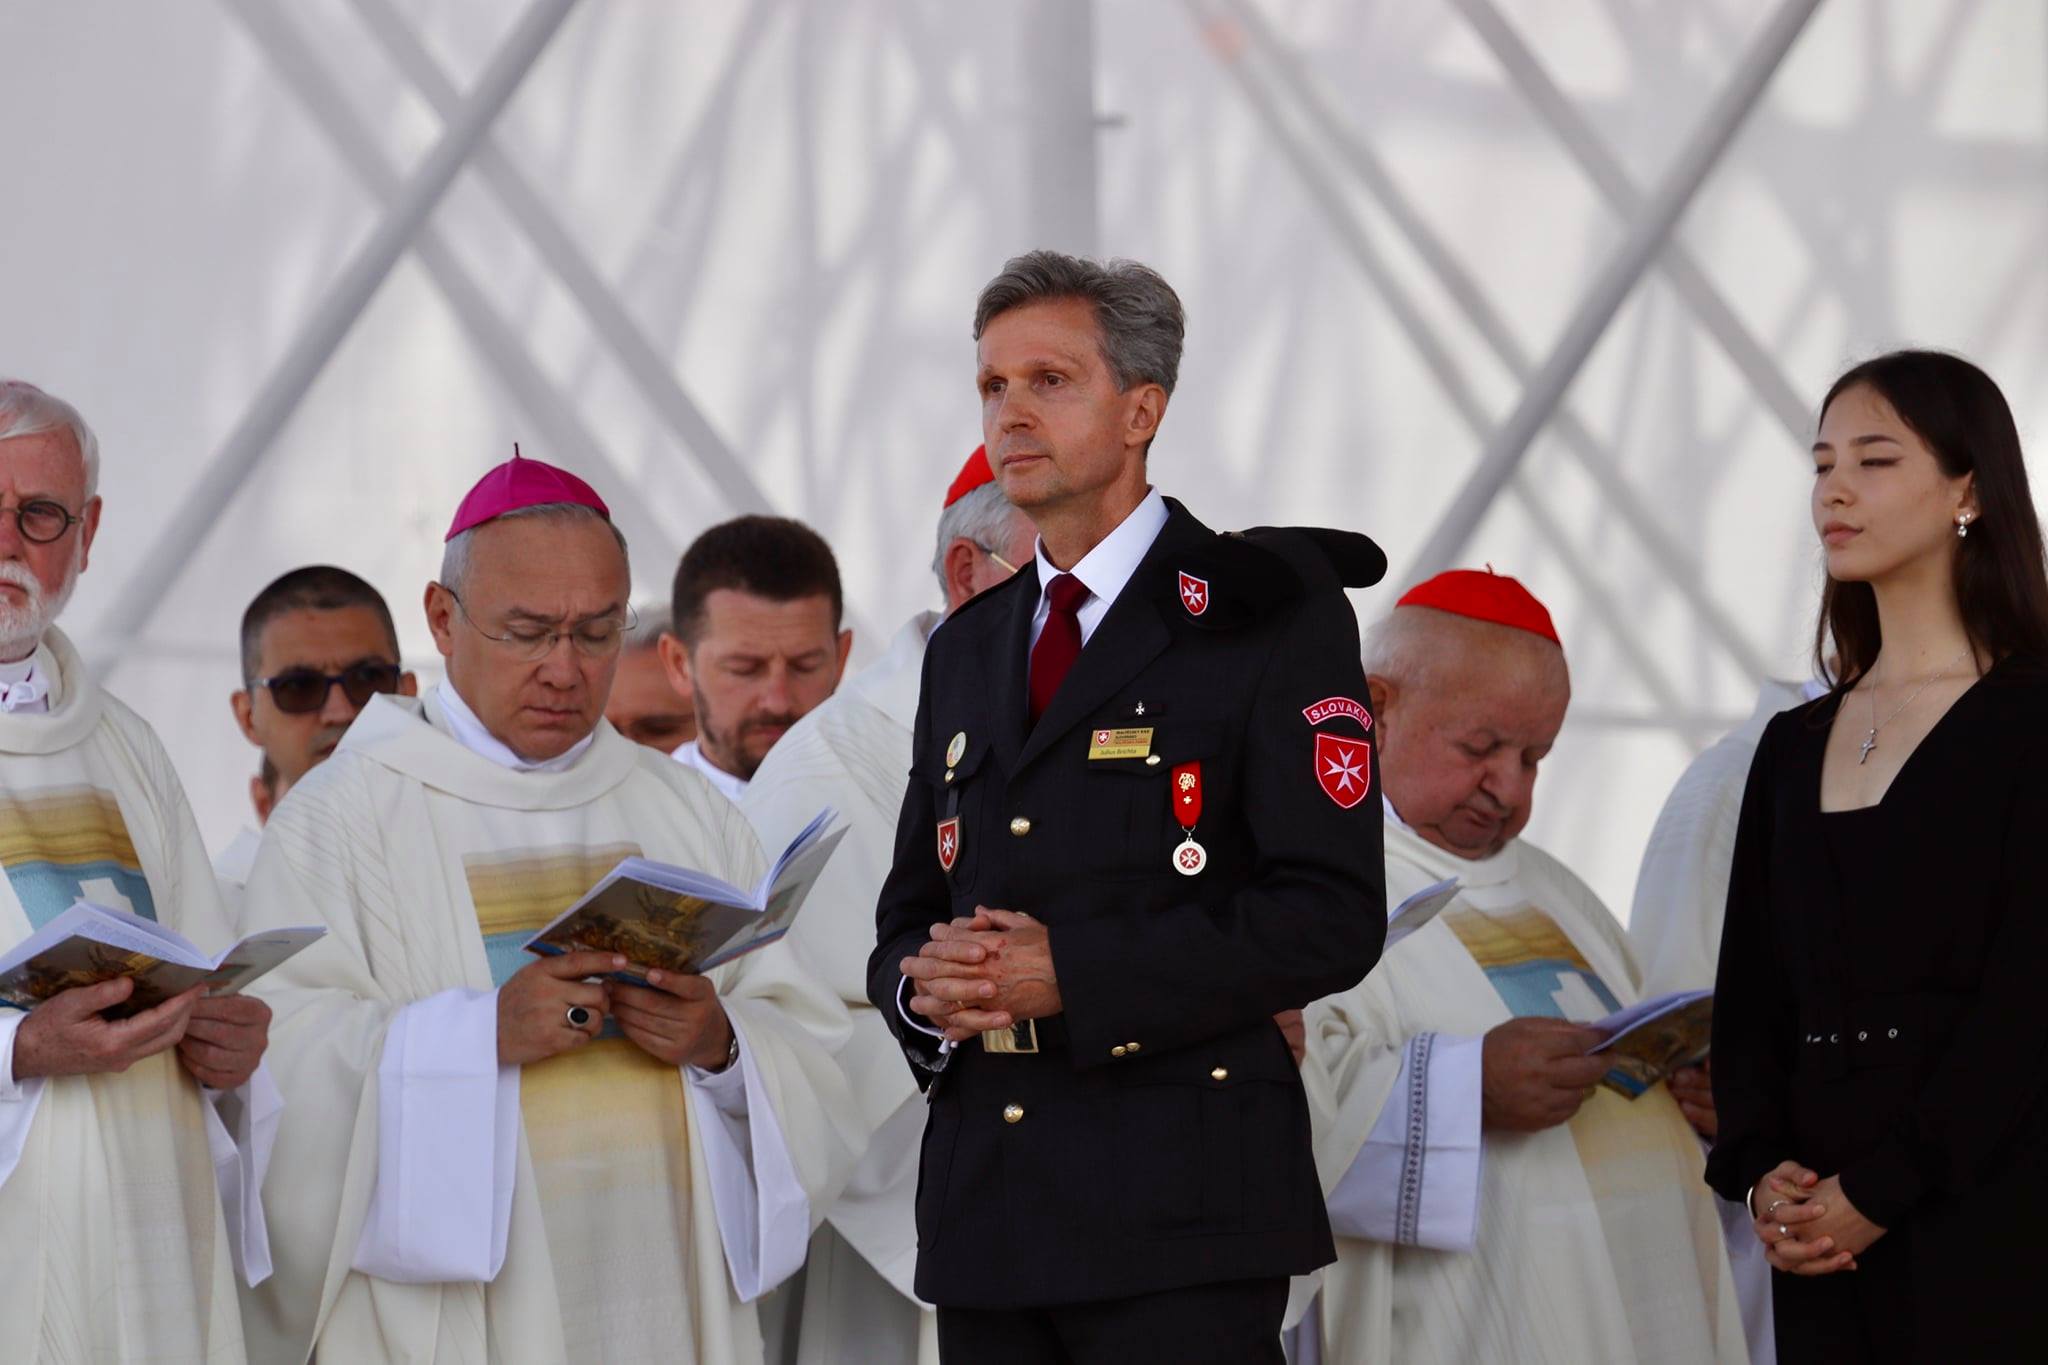 L’assistenza dei volontari dell’Ordine di Malta in Slovacchia durante la visita di Papa Francesco